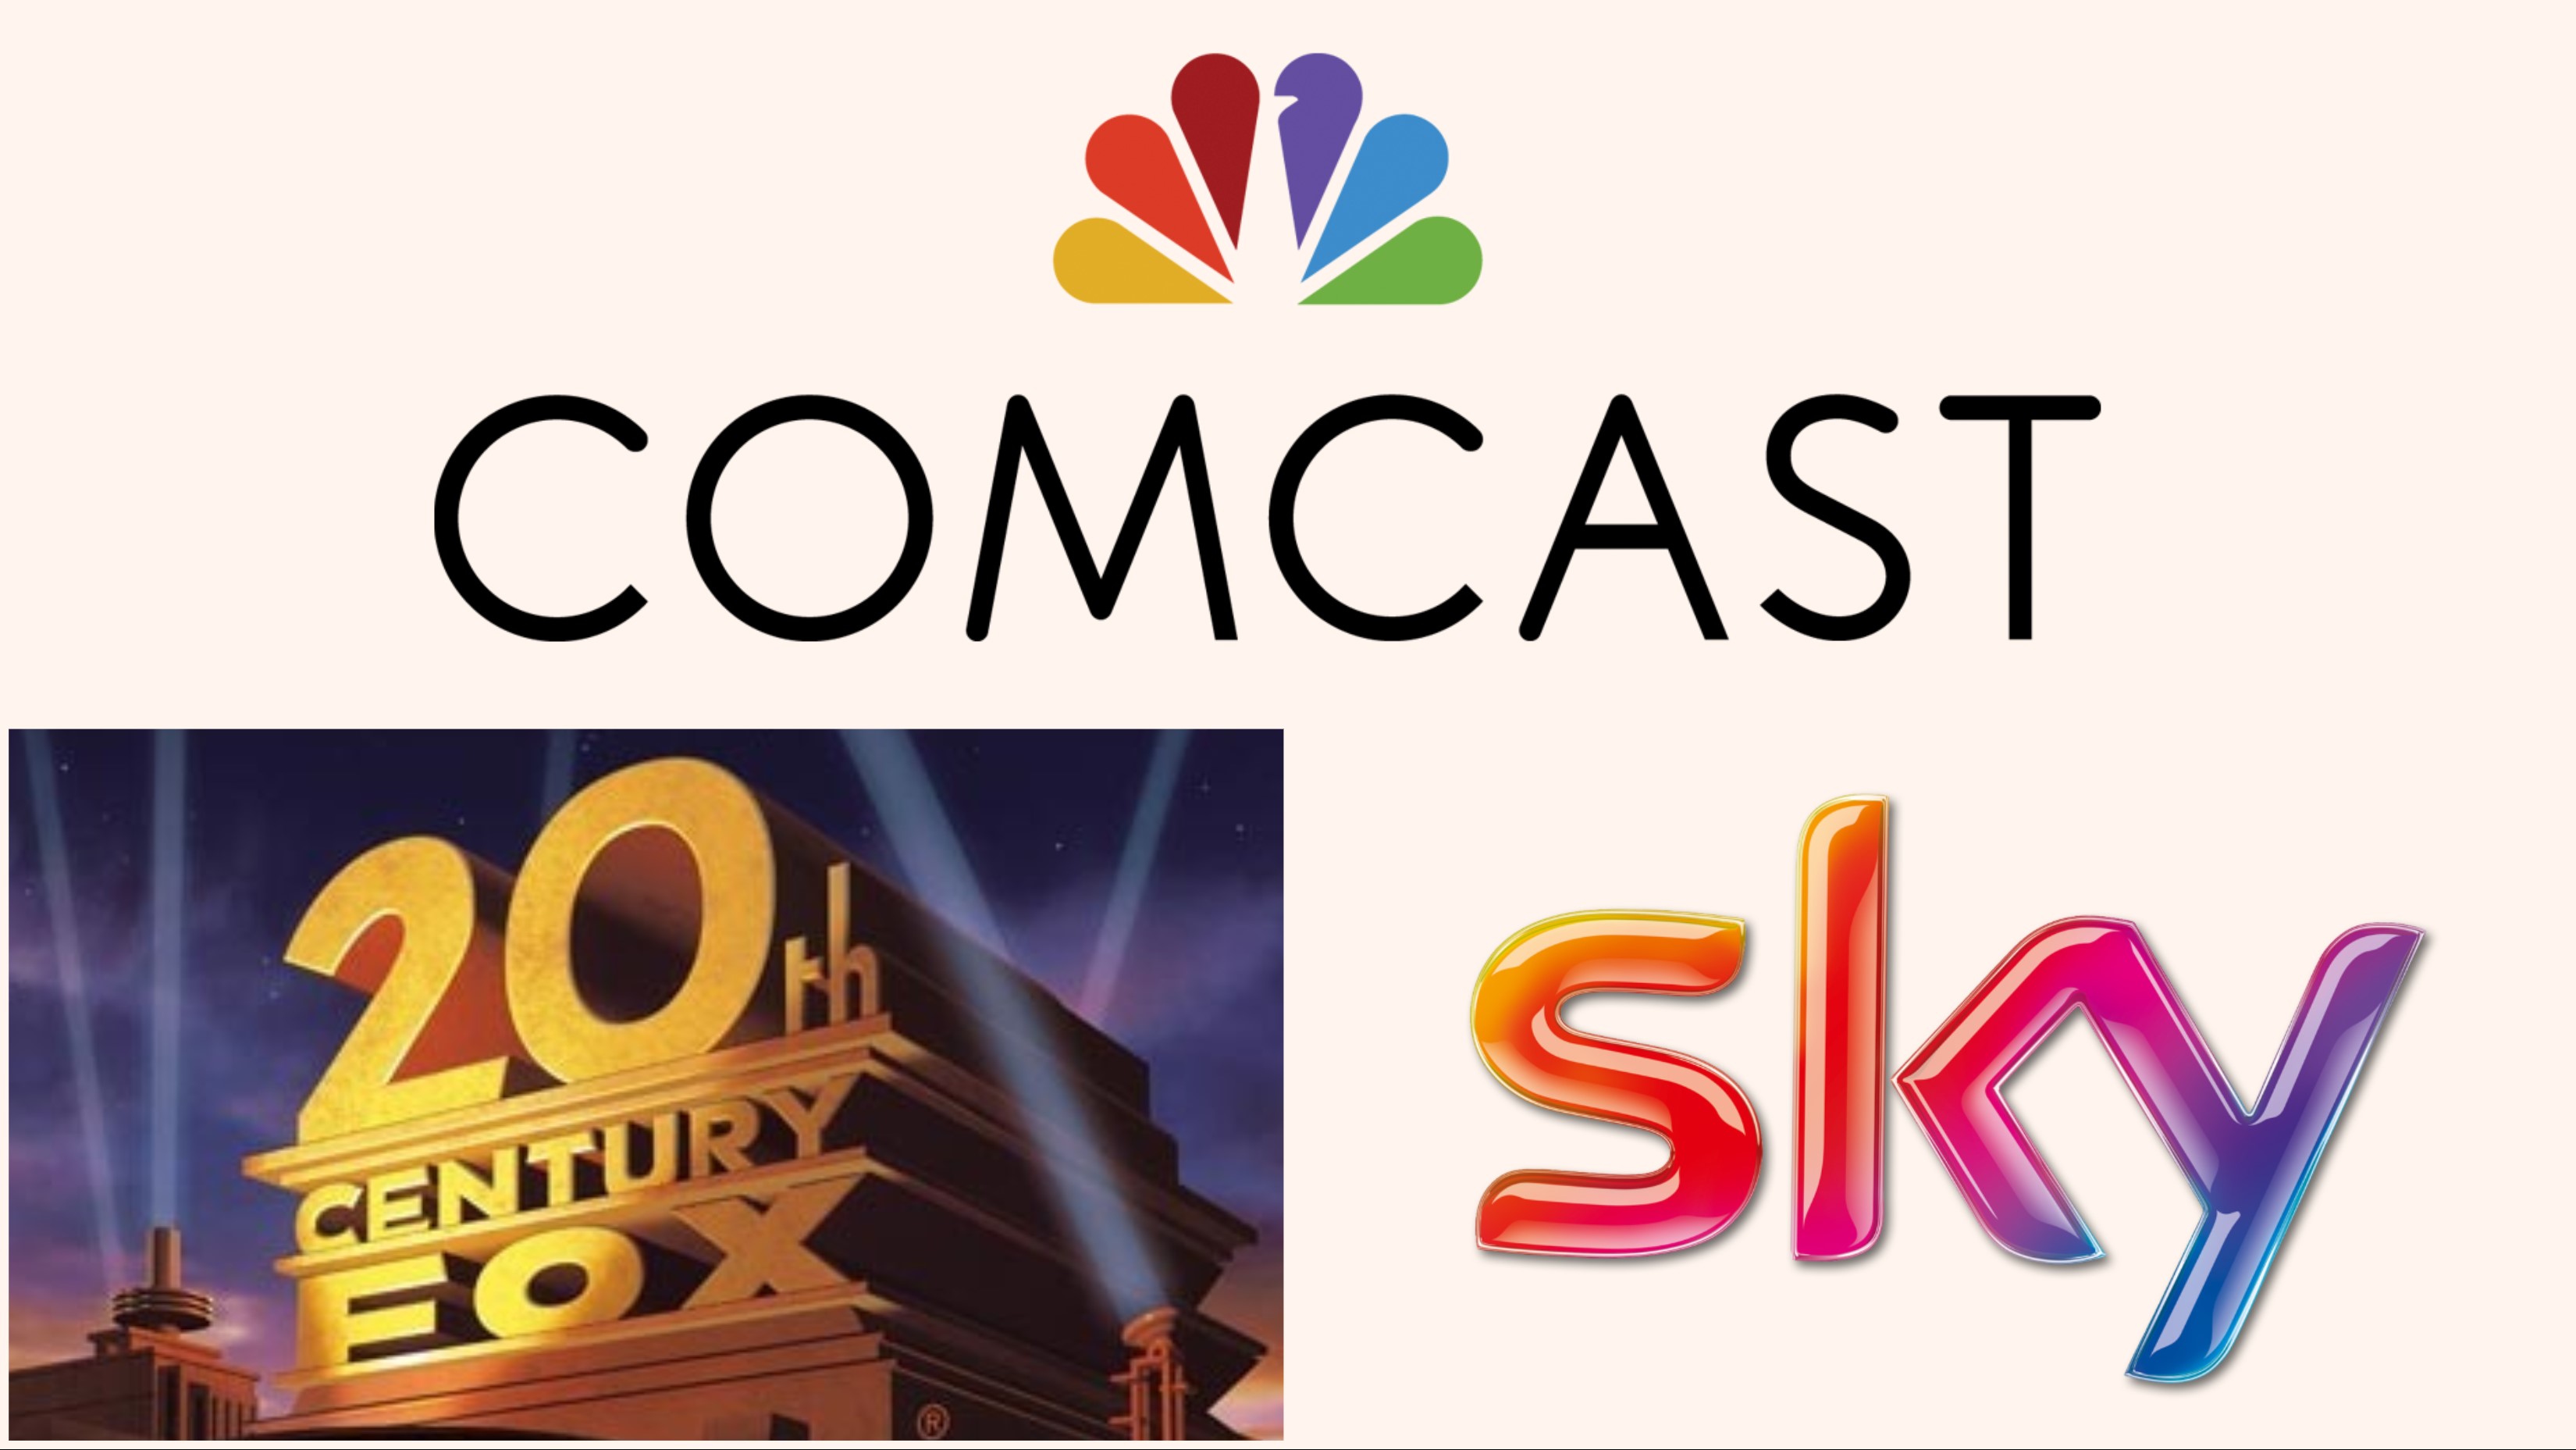 Comcast Fox Sky